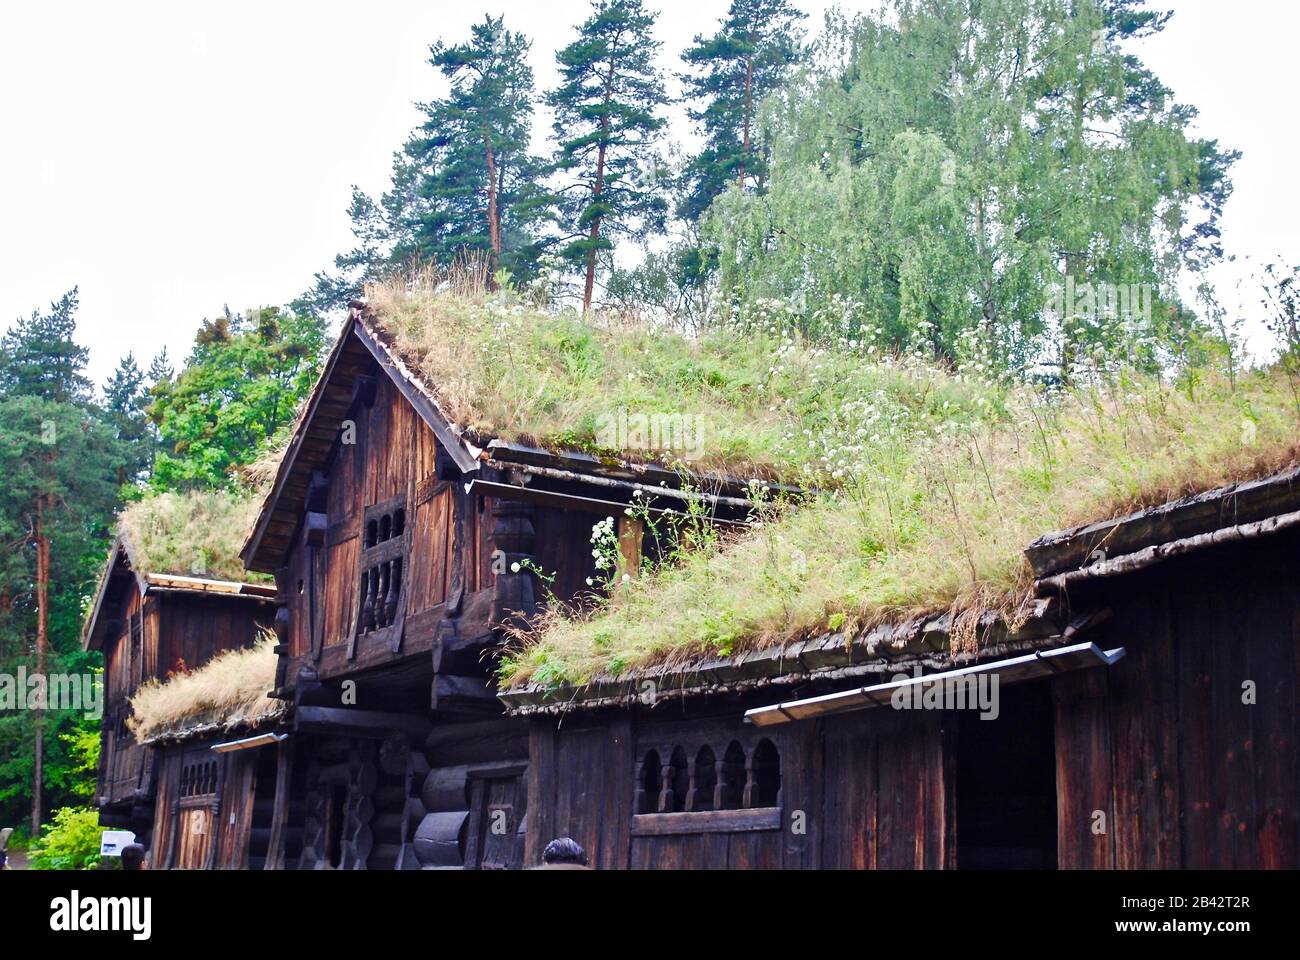 Lagerhaus und Bauernhaus im Norsk Folkemuseum (Folkmuseum) in Oslo, Norwegen, ein Freilichtmuseum mit 160 historischen Gebäuden. Stockfoto